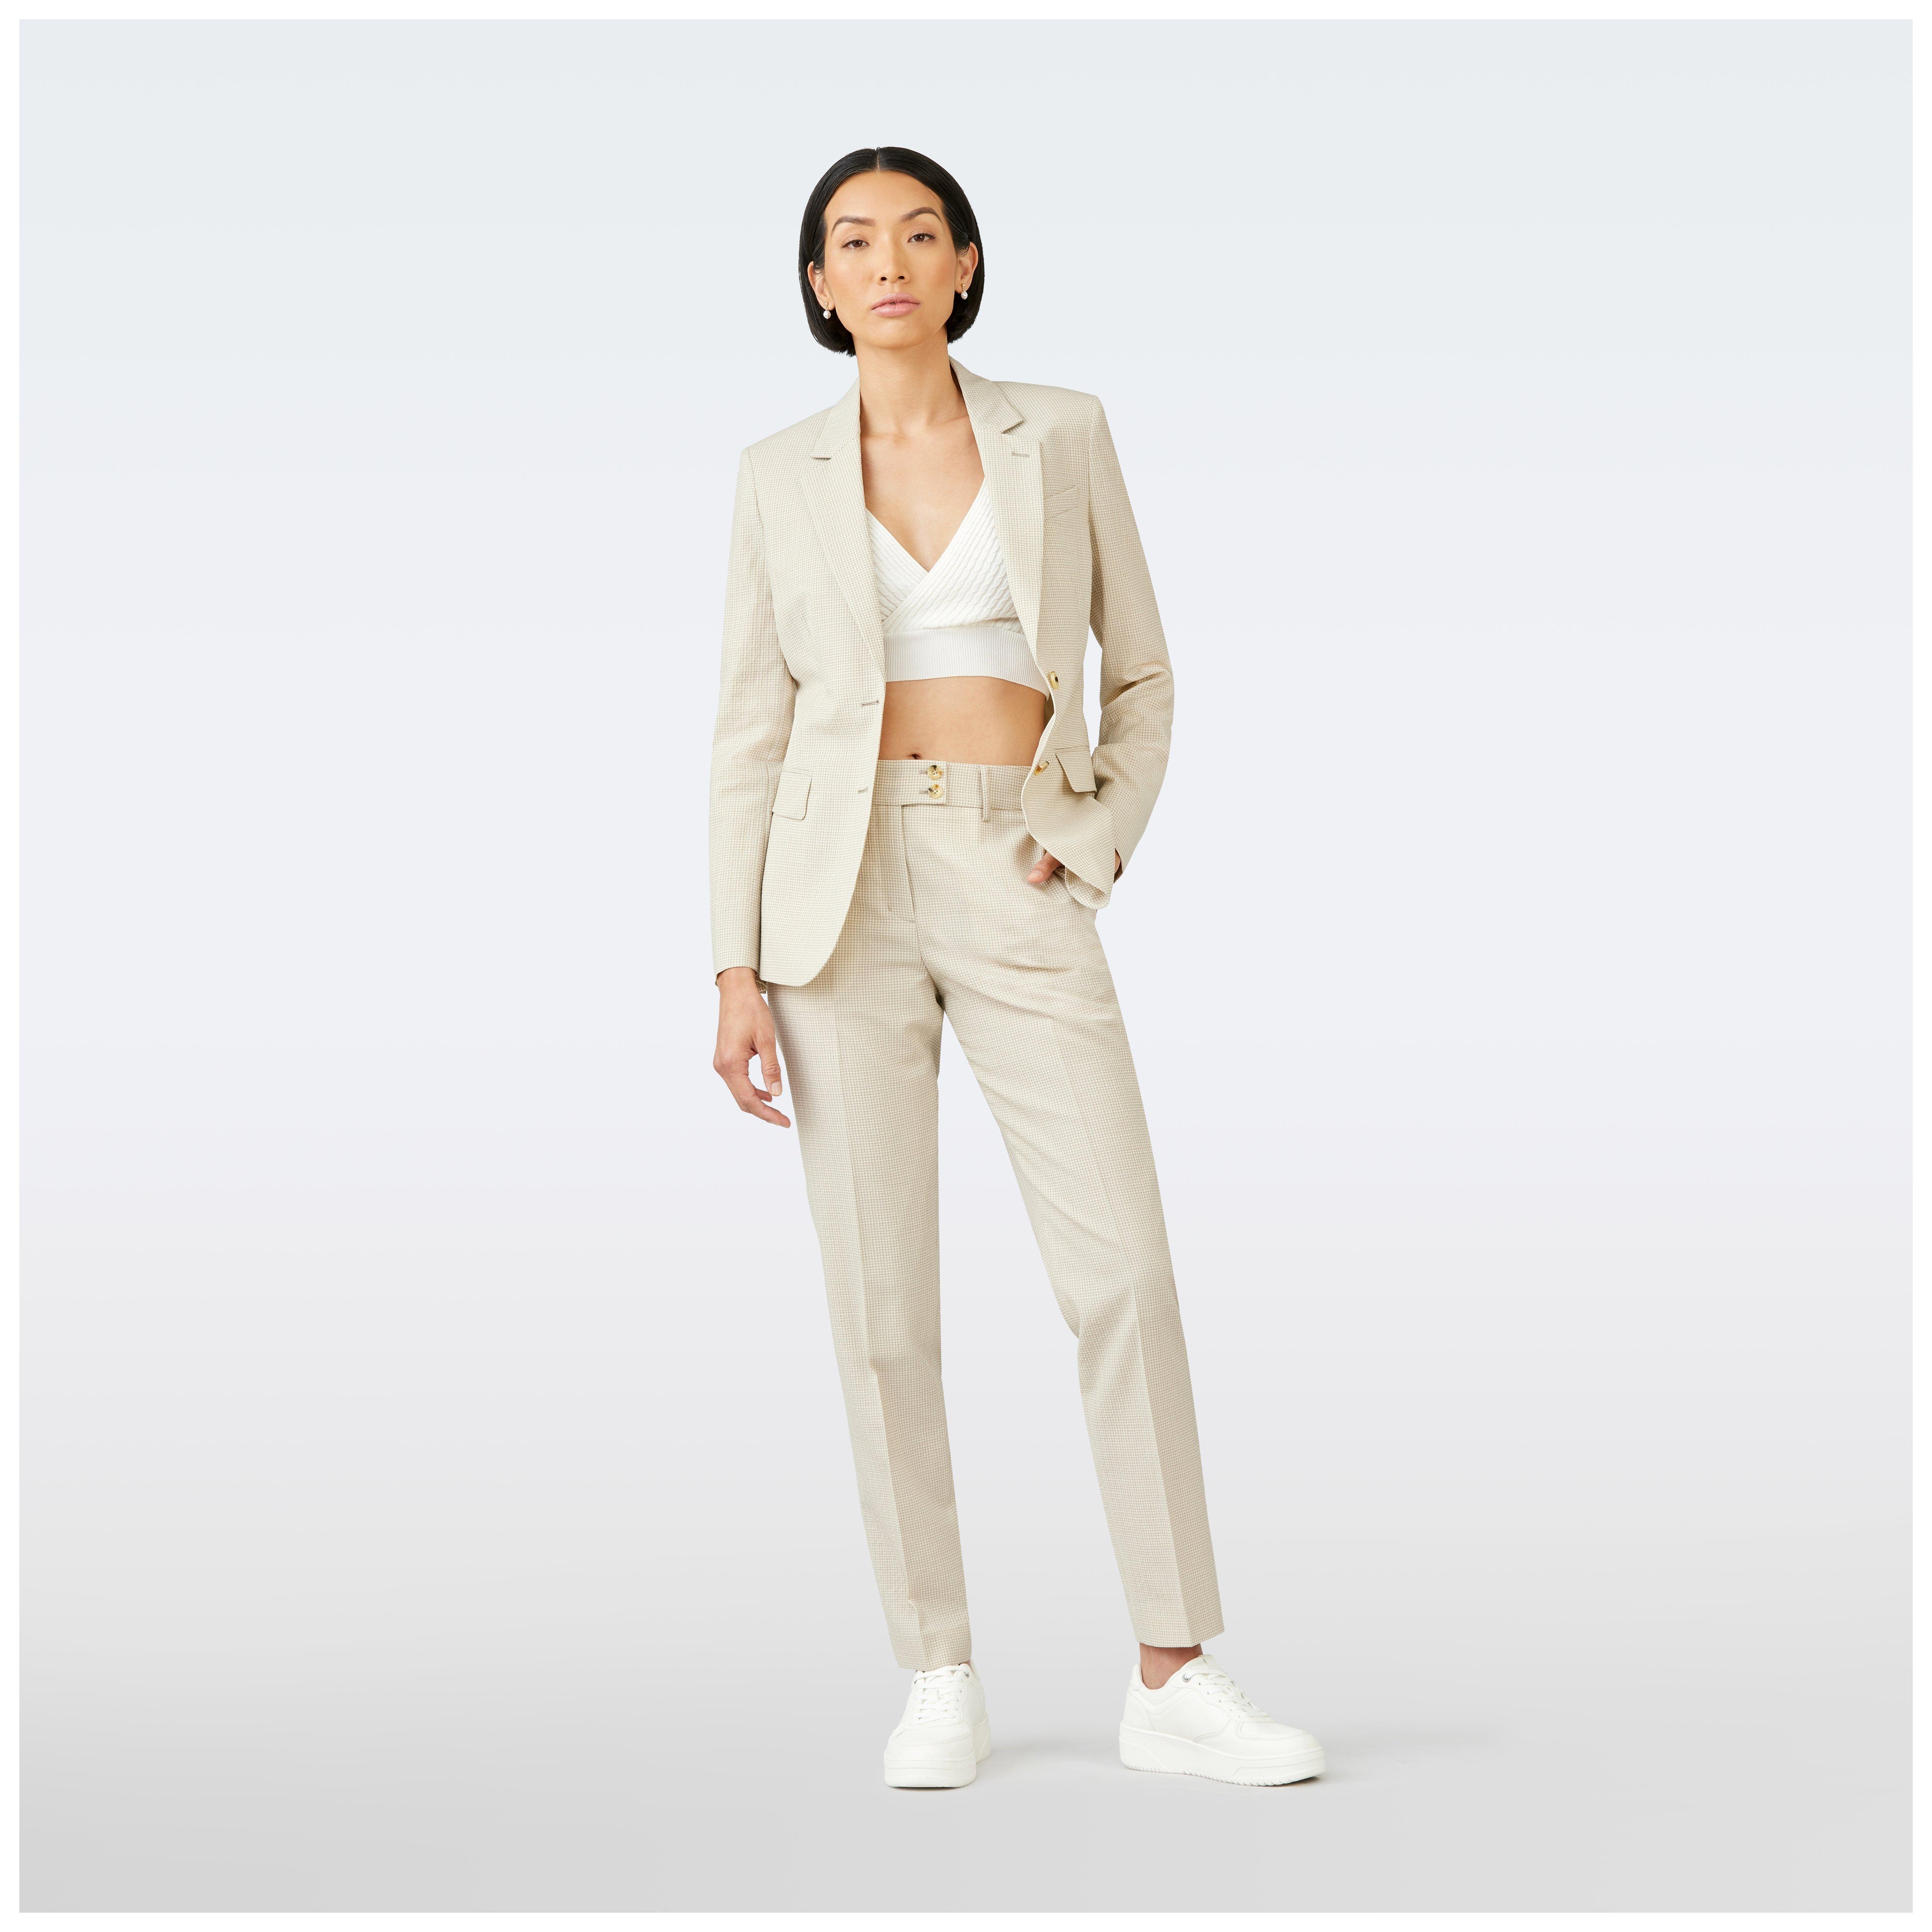 Cream Beige Pantsuit for Women, Blazer Trouser Suit Set for Women, Pantsuit  With Oversized Blazer and Long Pants, Women's Business Suit - Etsy Australia